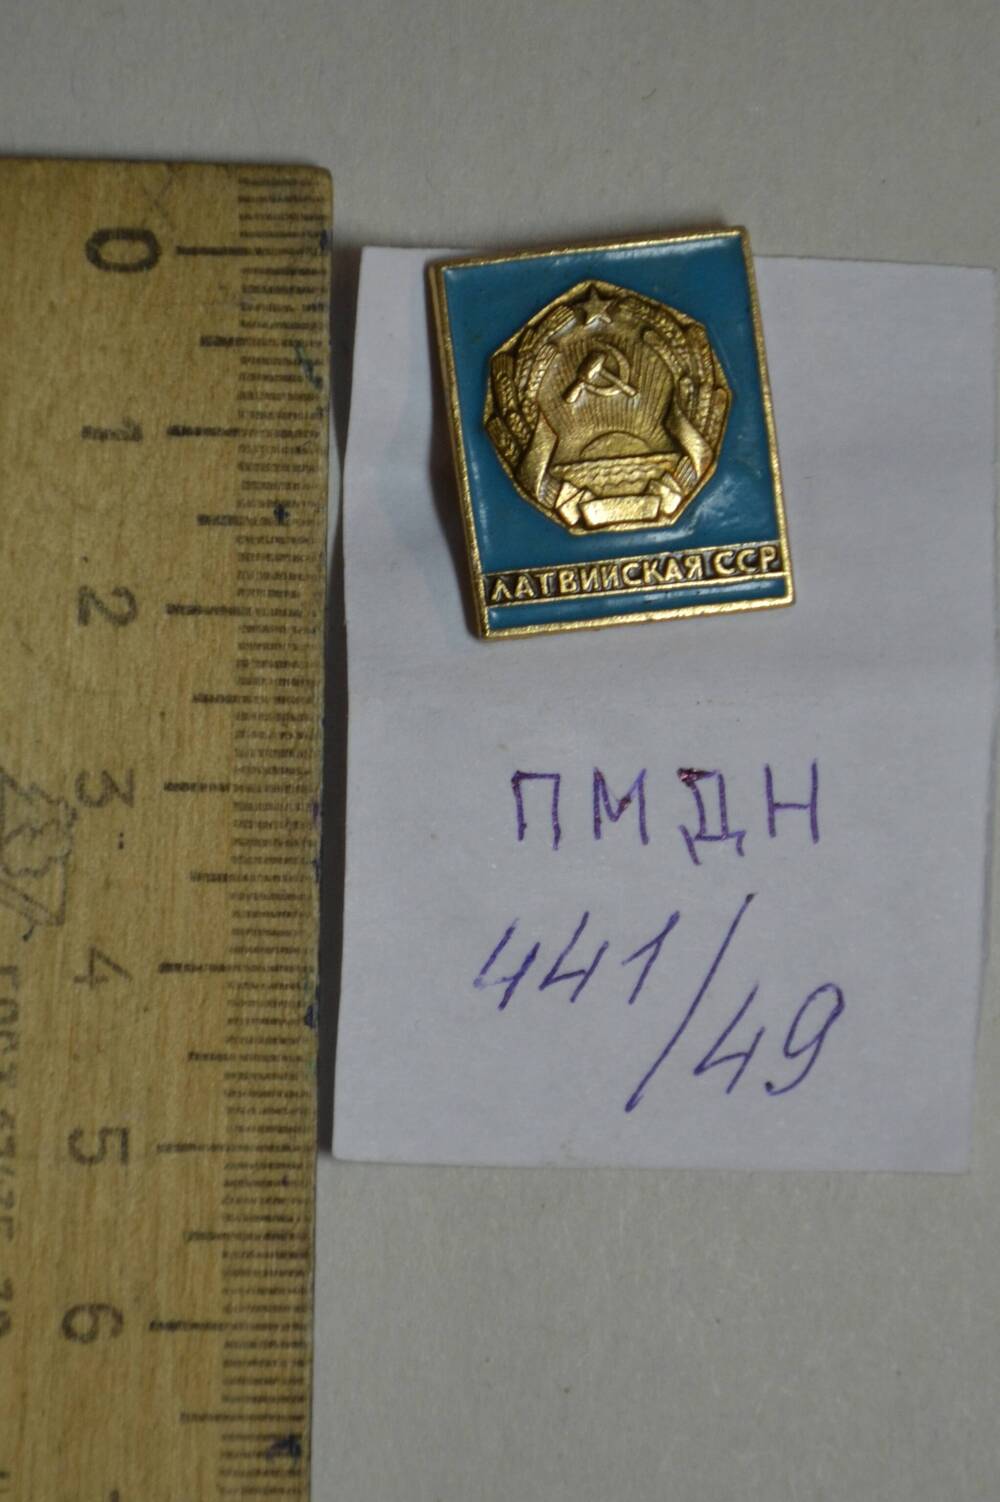 Значок «Латвийская ССР».